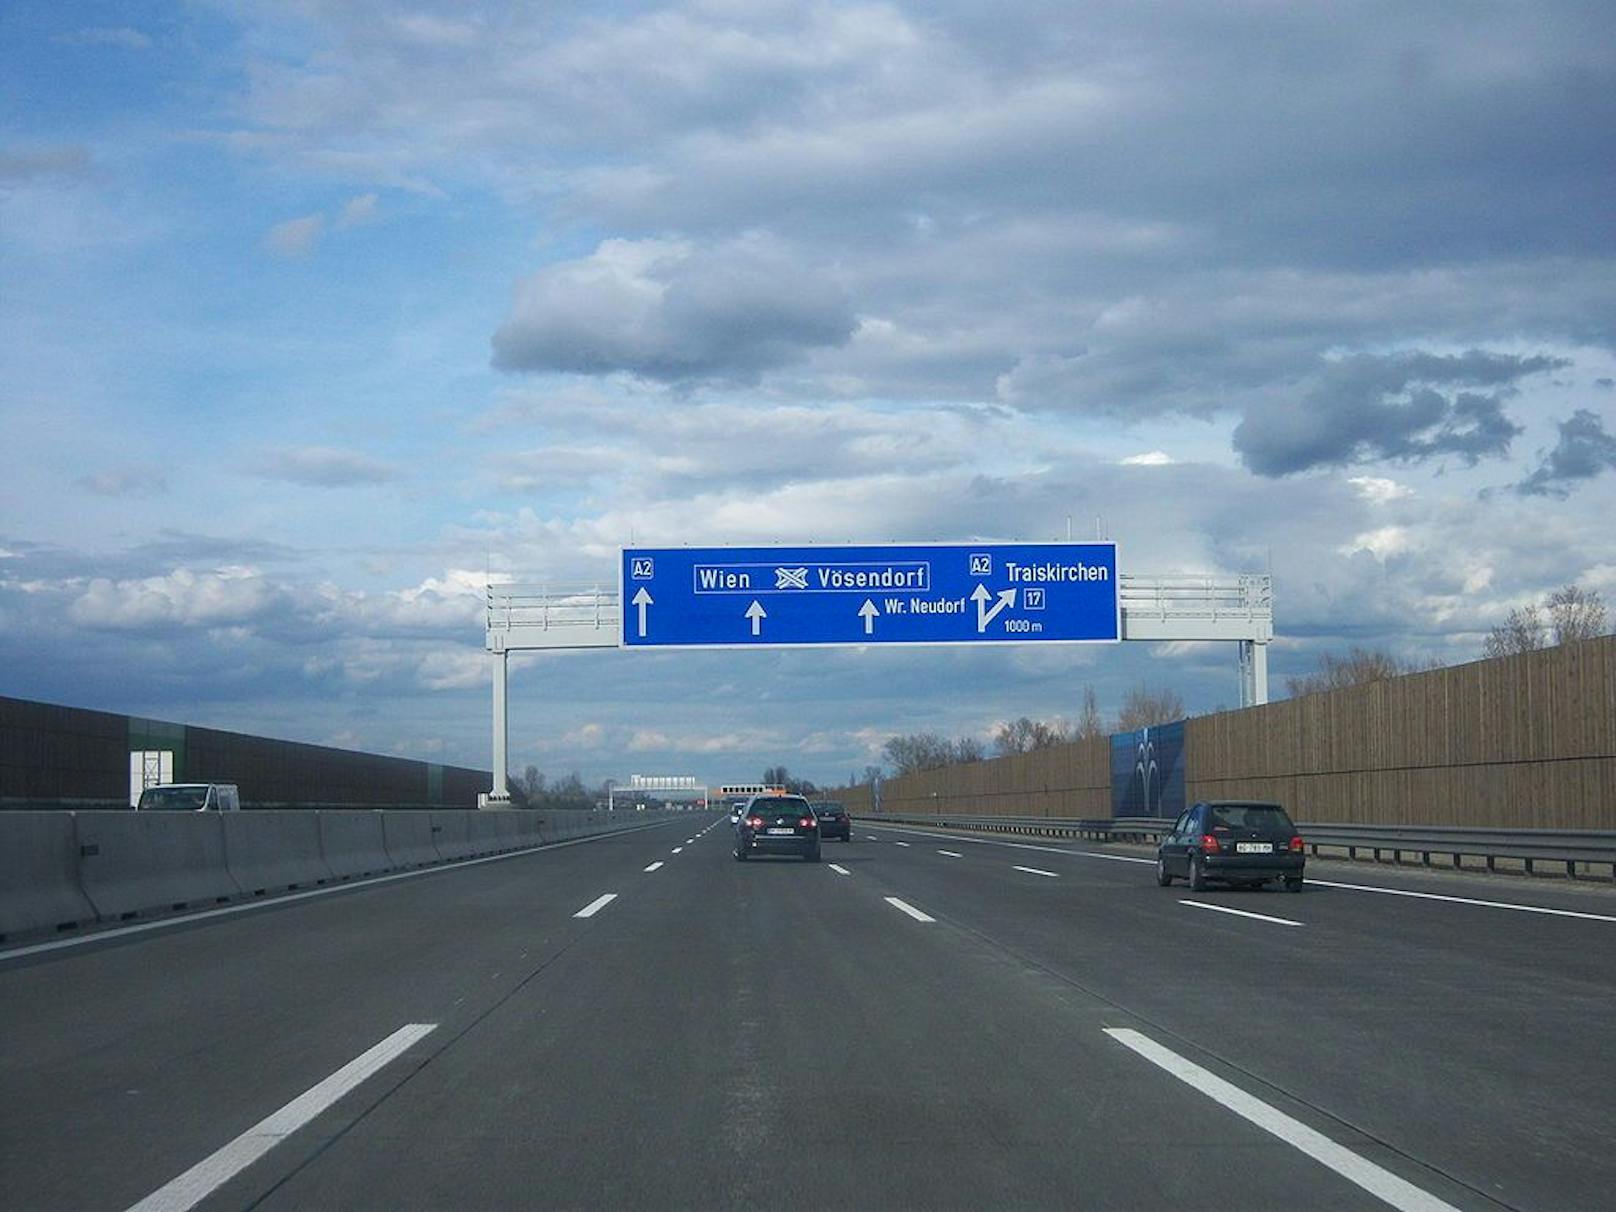 Wiener bretterte mit 252 km/h über die Südautobahn